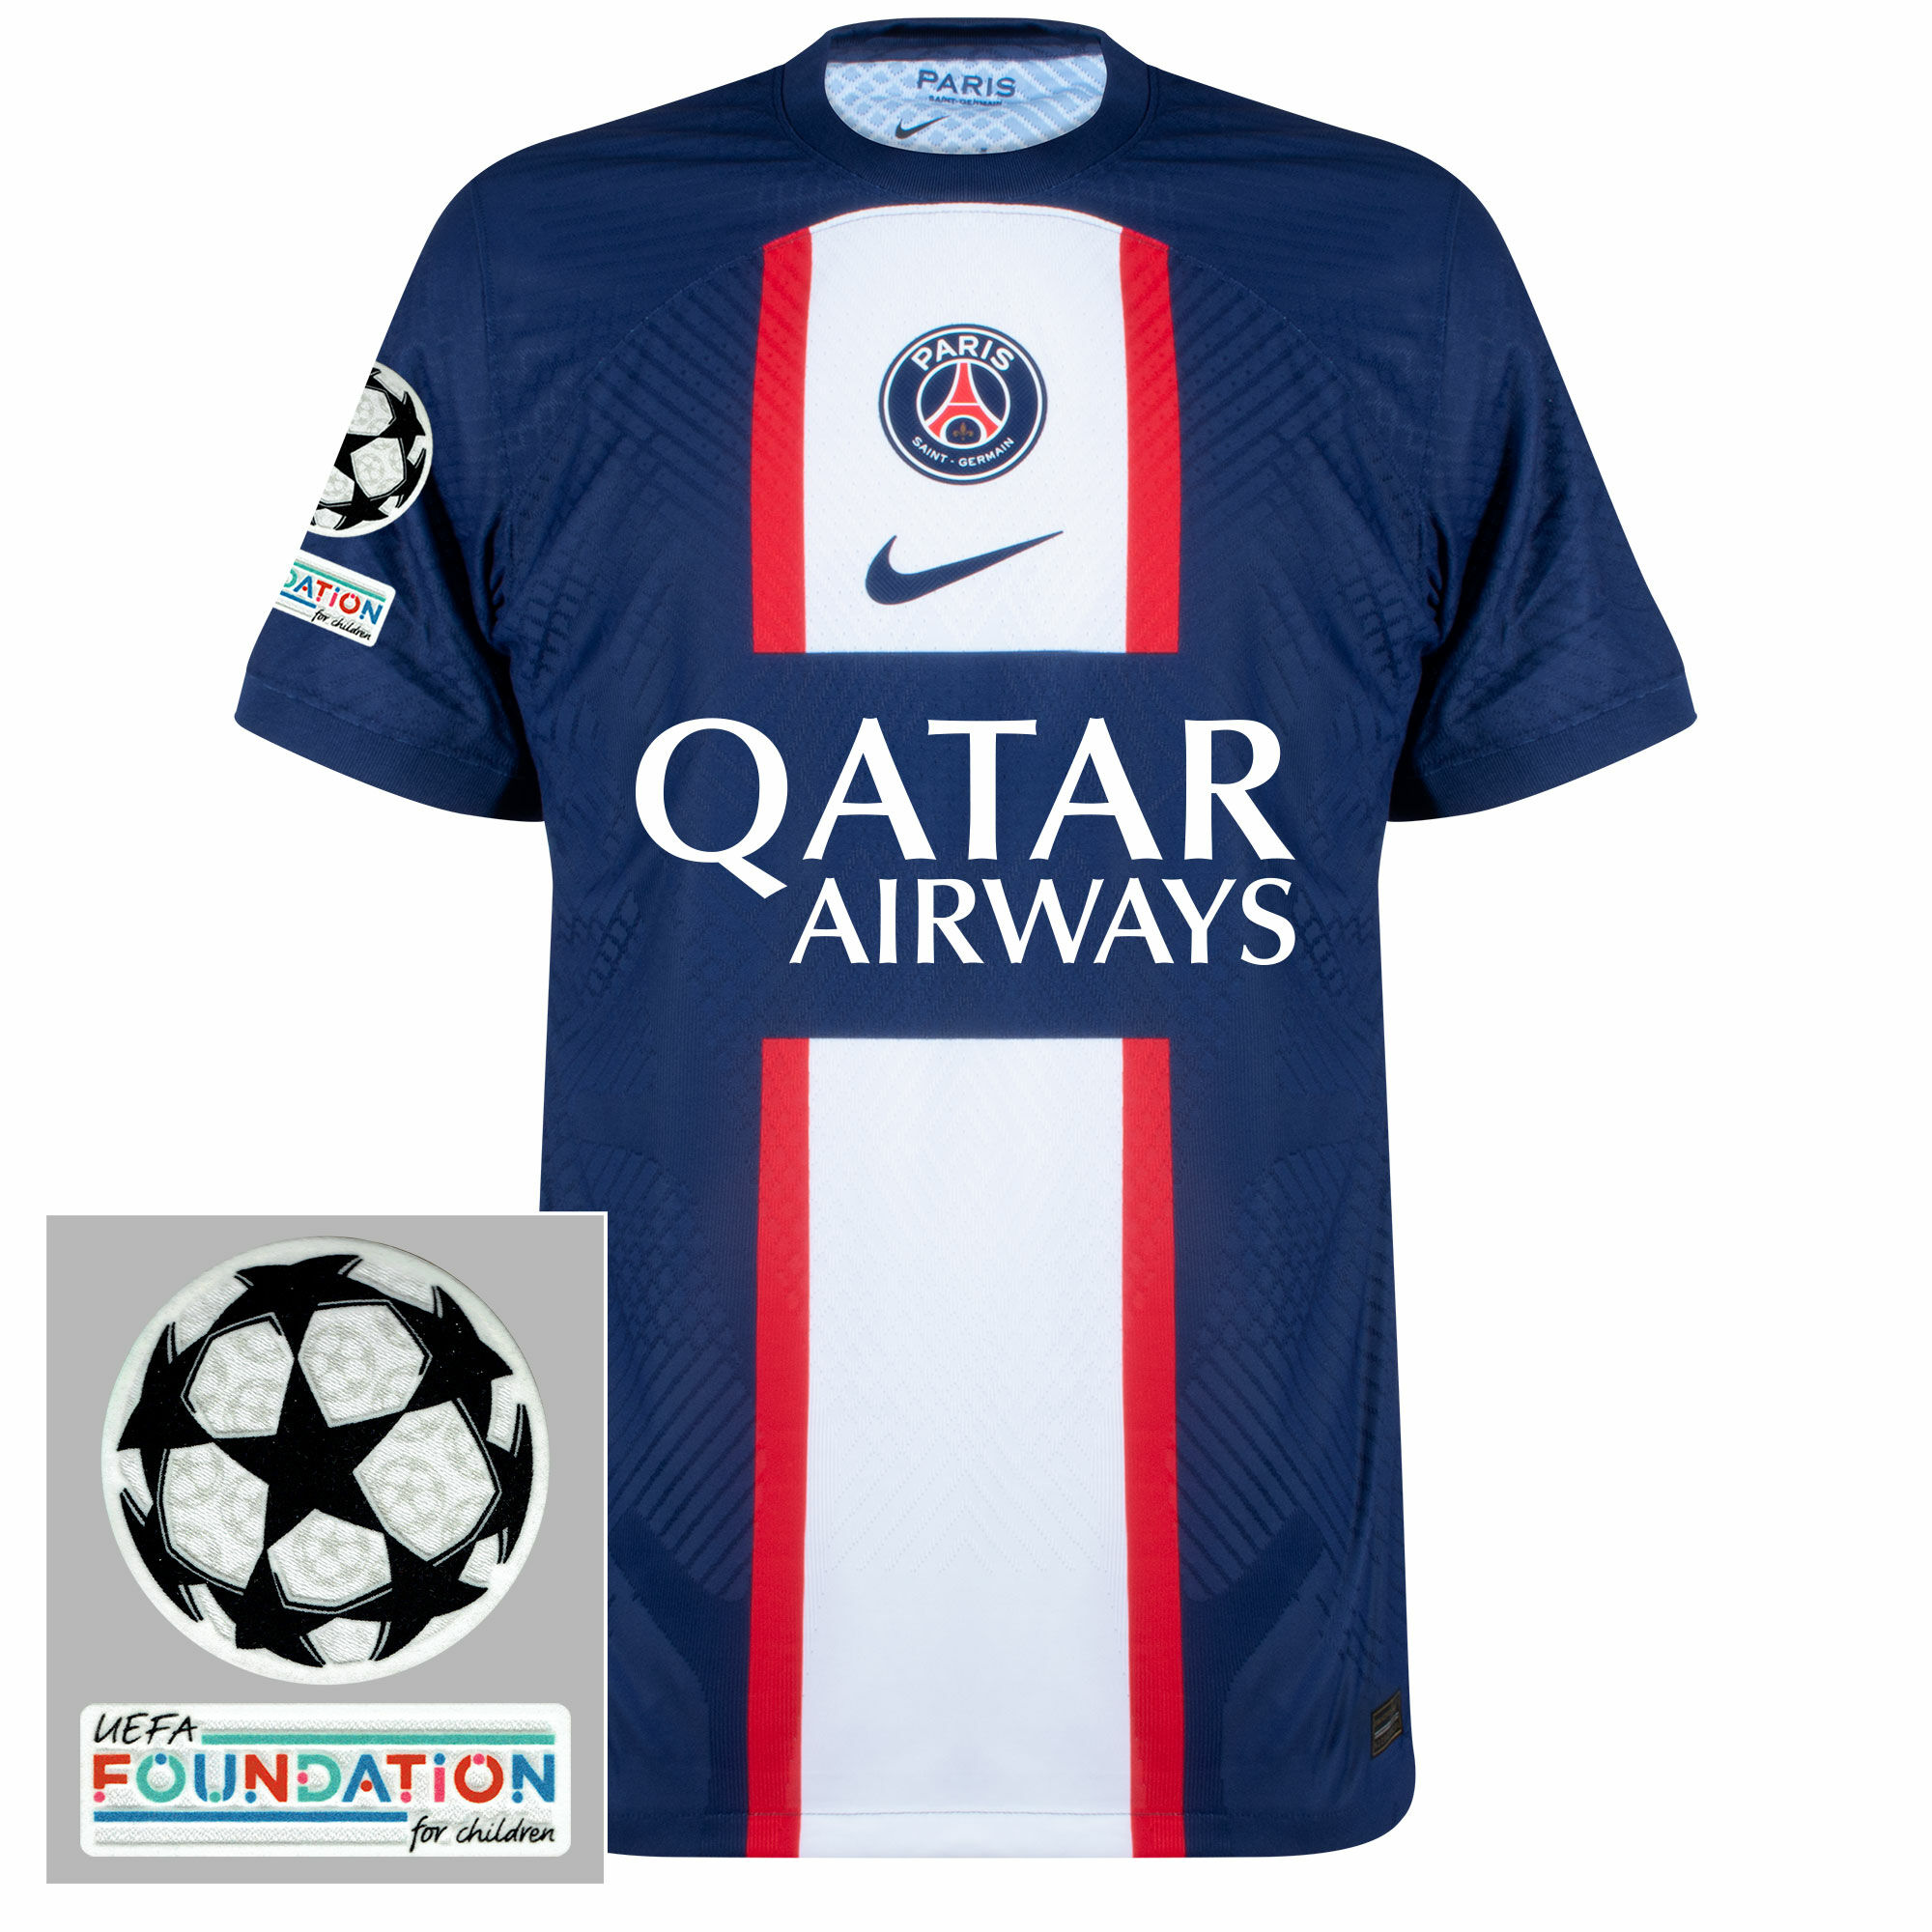 Paris Saint Germain - Dres fotbalový "Match" - loga UCL a UEFA Foundation, domácí, sezóna 2022/23, Dri-FIT ADV, modrý